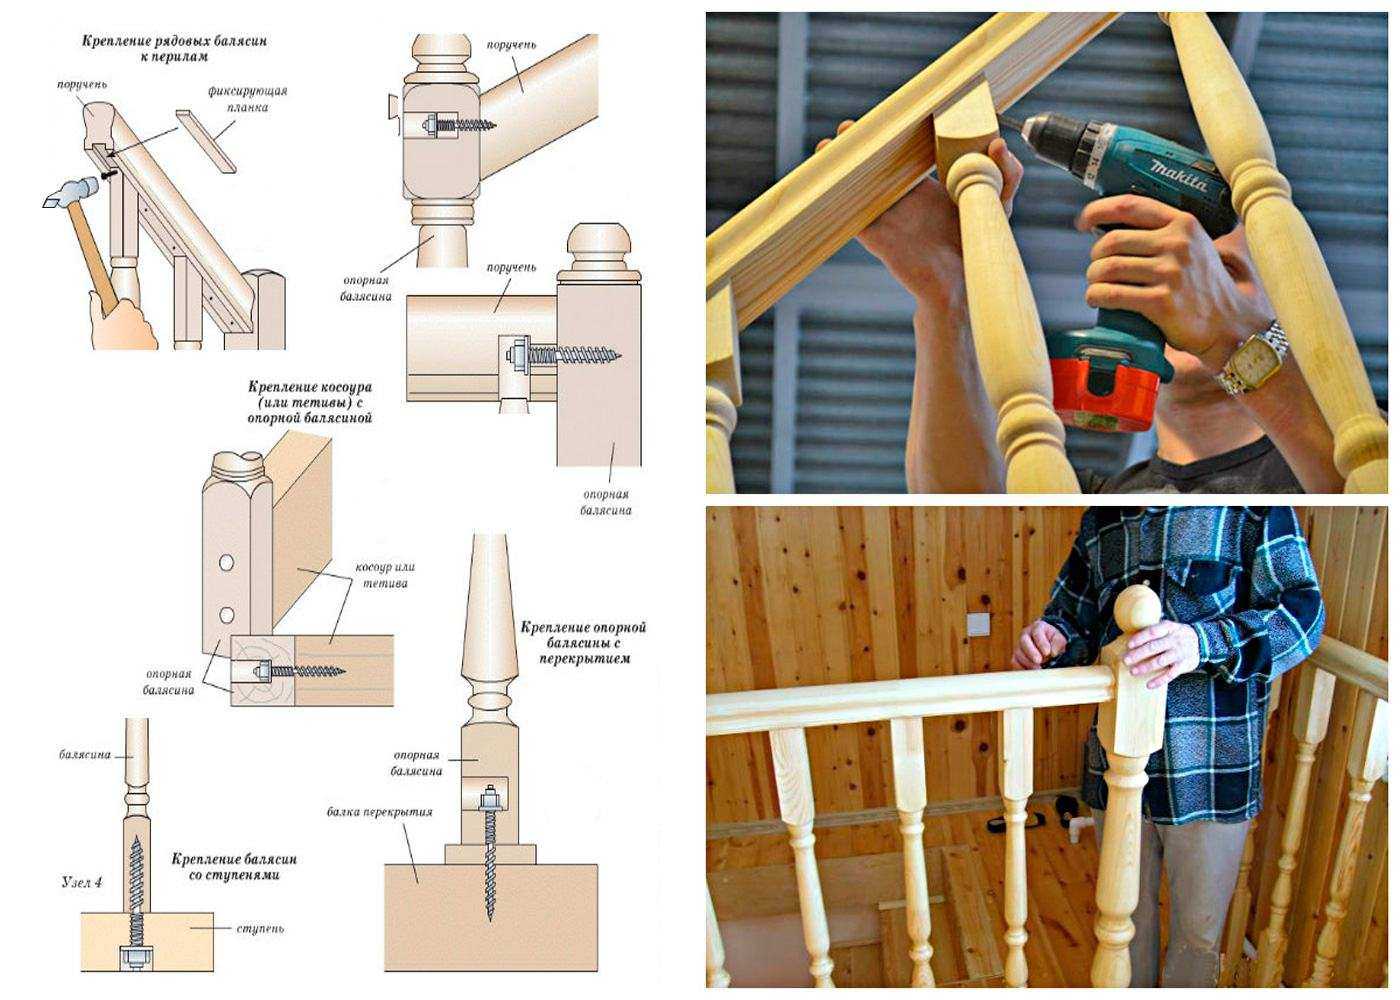 Деревянные перила для лестниц: особенности конструкции Тонкости создания перил Советы по конструированию Инструкция по изготовлению отдельных деталей